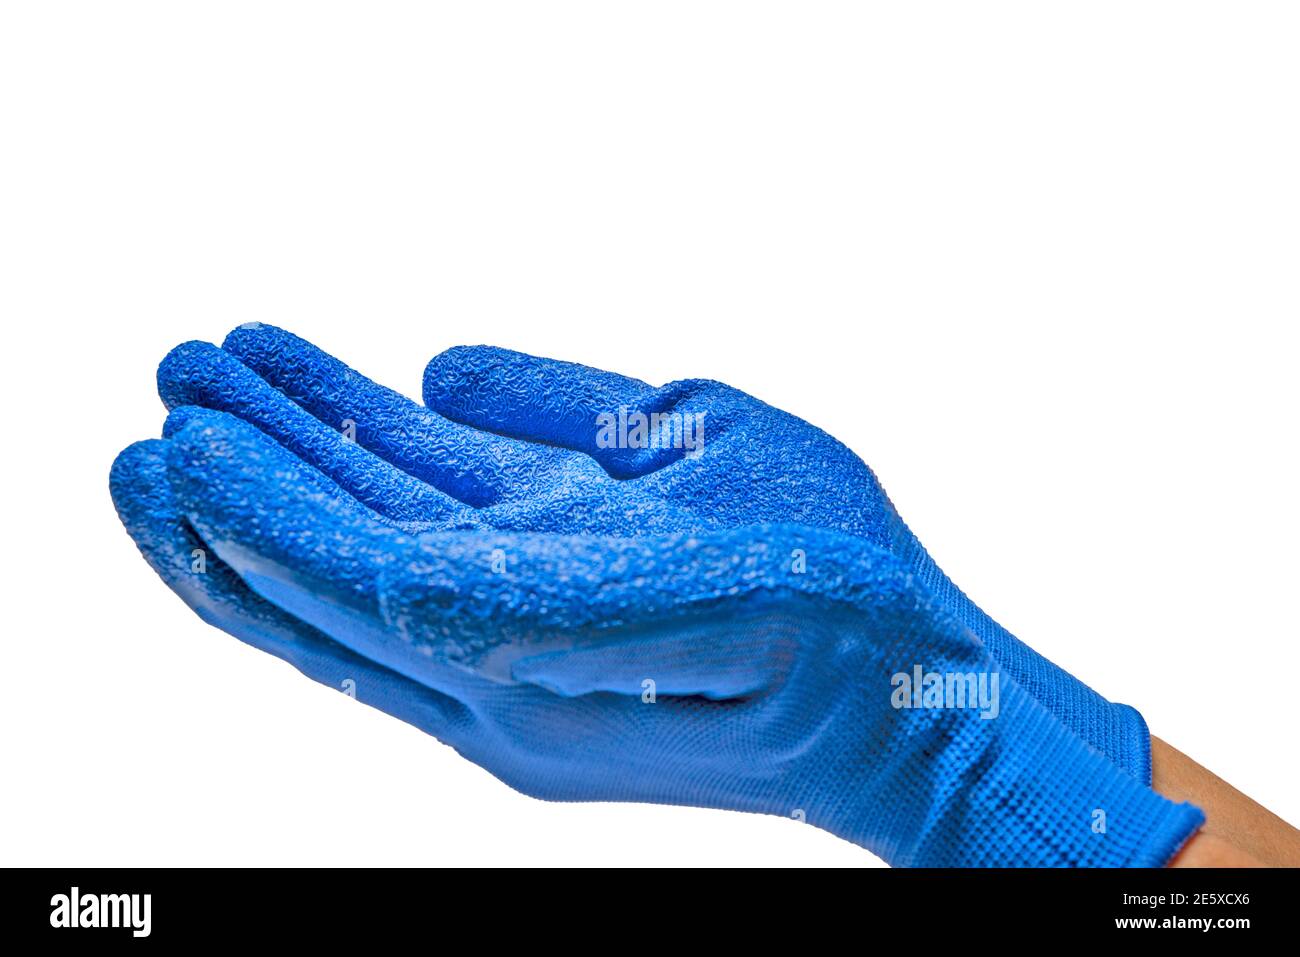 Horizontale Nahaufnahme von zwei blauen Handschuhen, die nach oben gehoben und in die Schröpfchen gekuppt wurden, um etwas isoliertes auf Weiß zu halten. Stockfoto